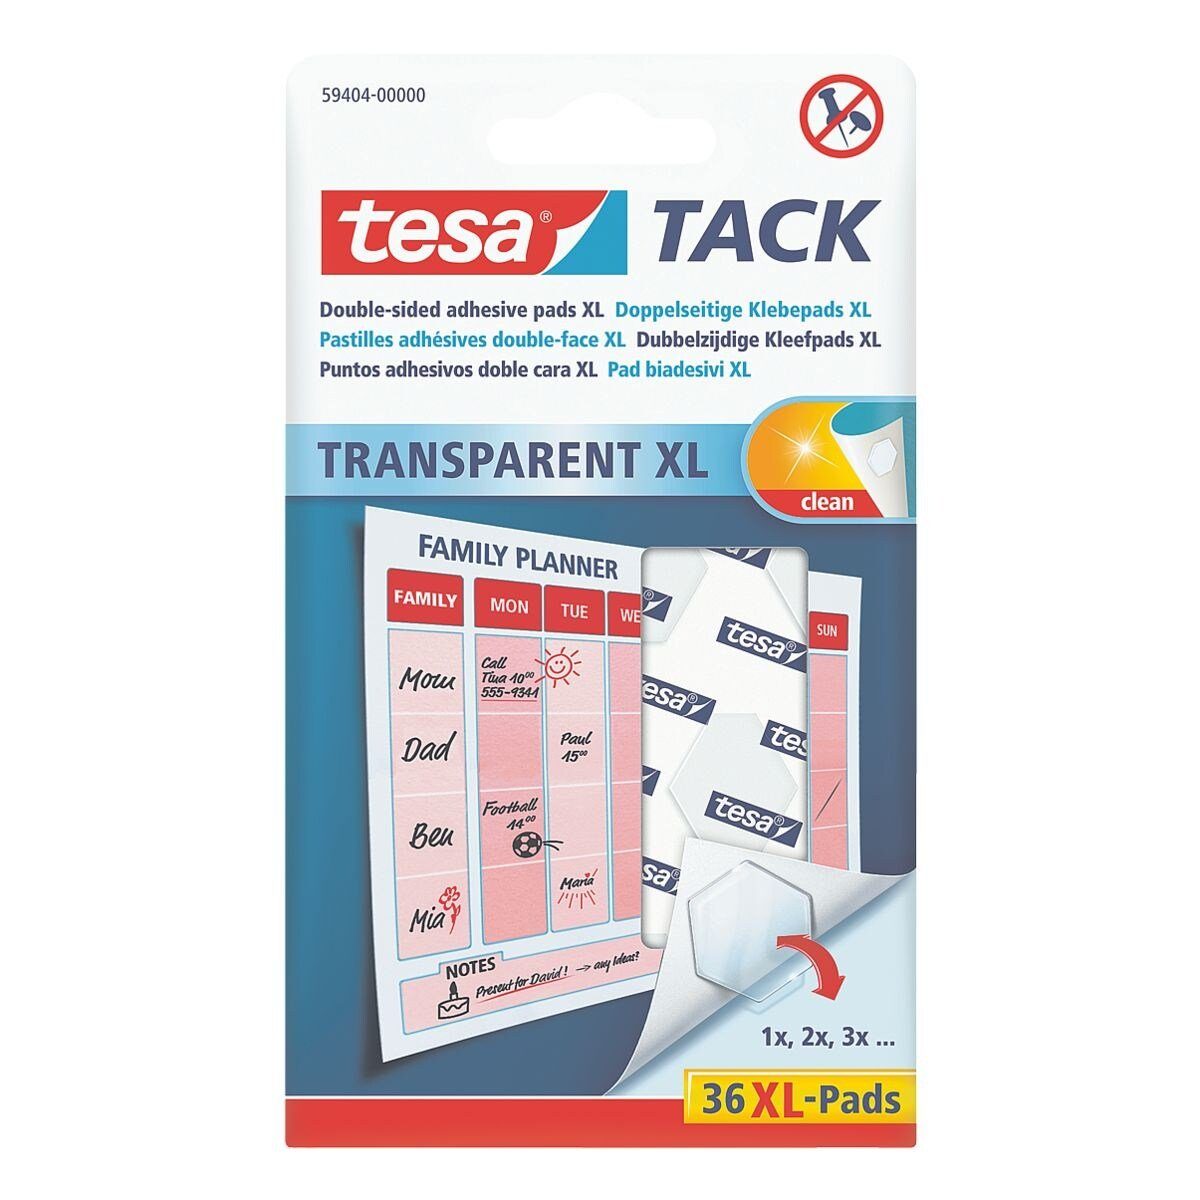 tesa Klebepad »TACK XL« (36-St) wiederablösbar / wiederverwendbar,  transparent und flach online kaufen | OTTO